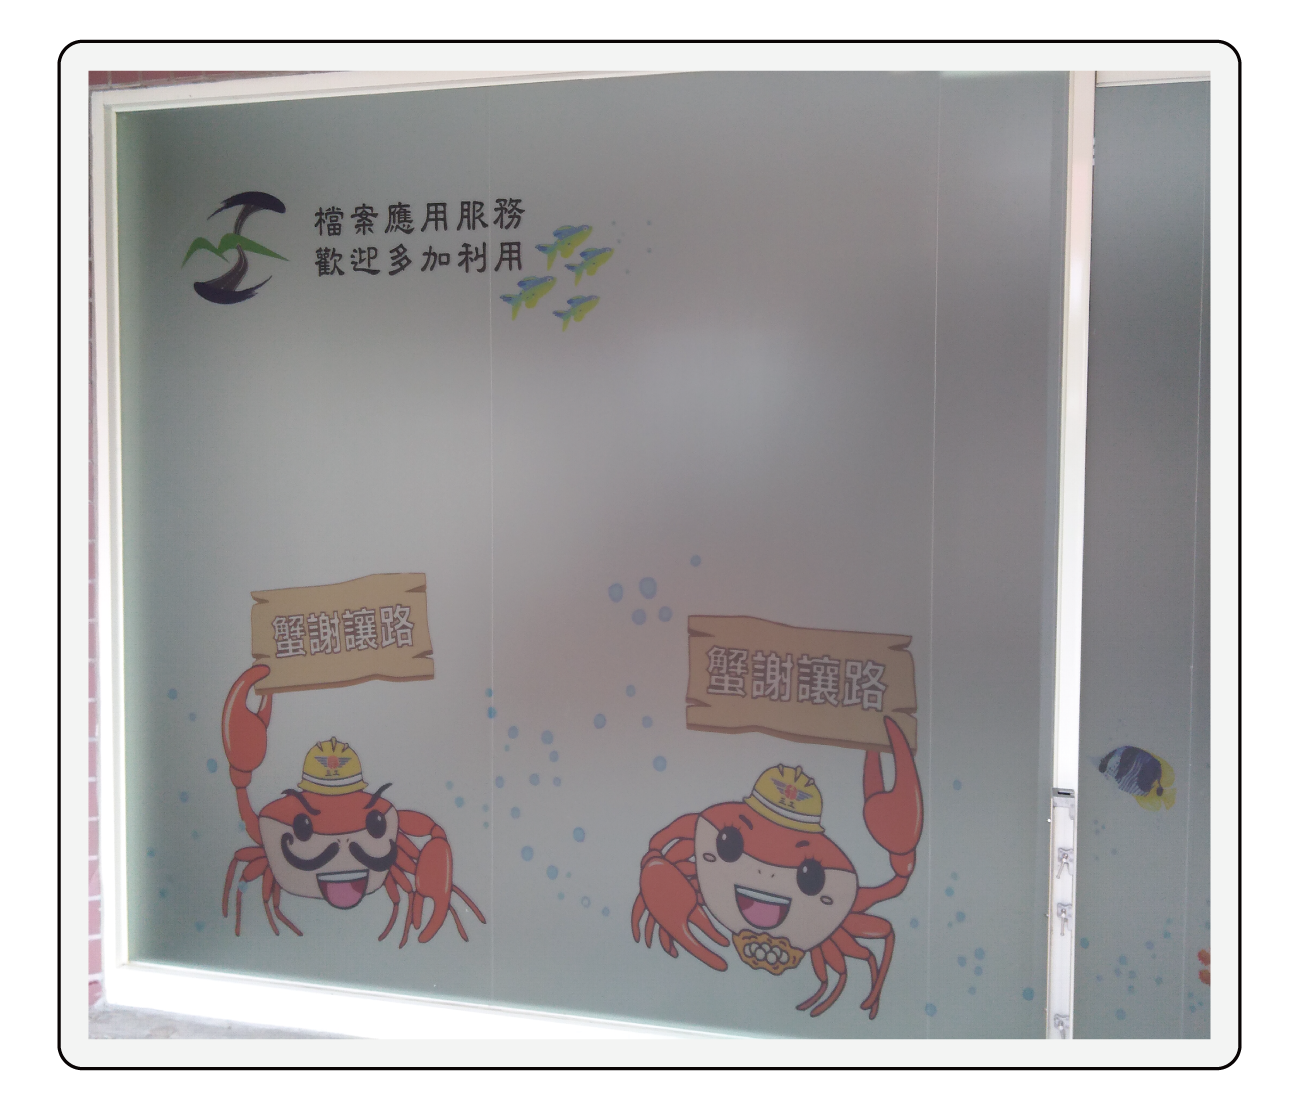   圖片說明：機關吉祥物，香蕉灣護       蟹廊道產生蟹平平、蟹安安